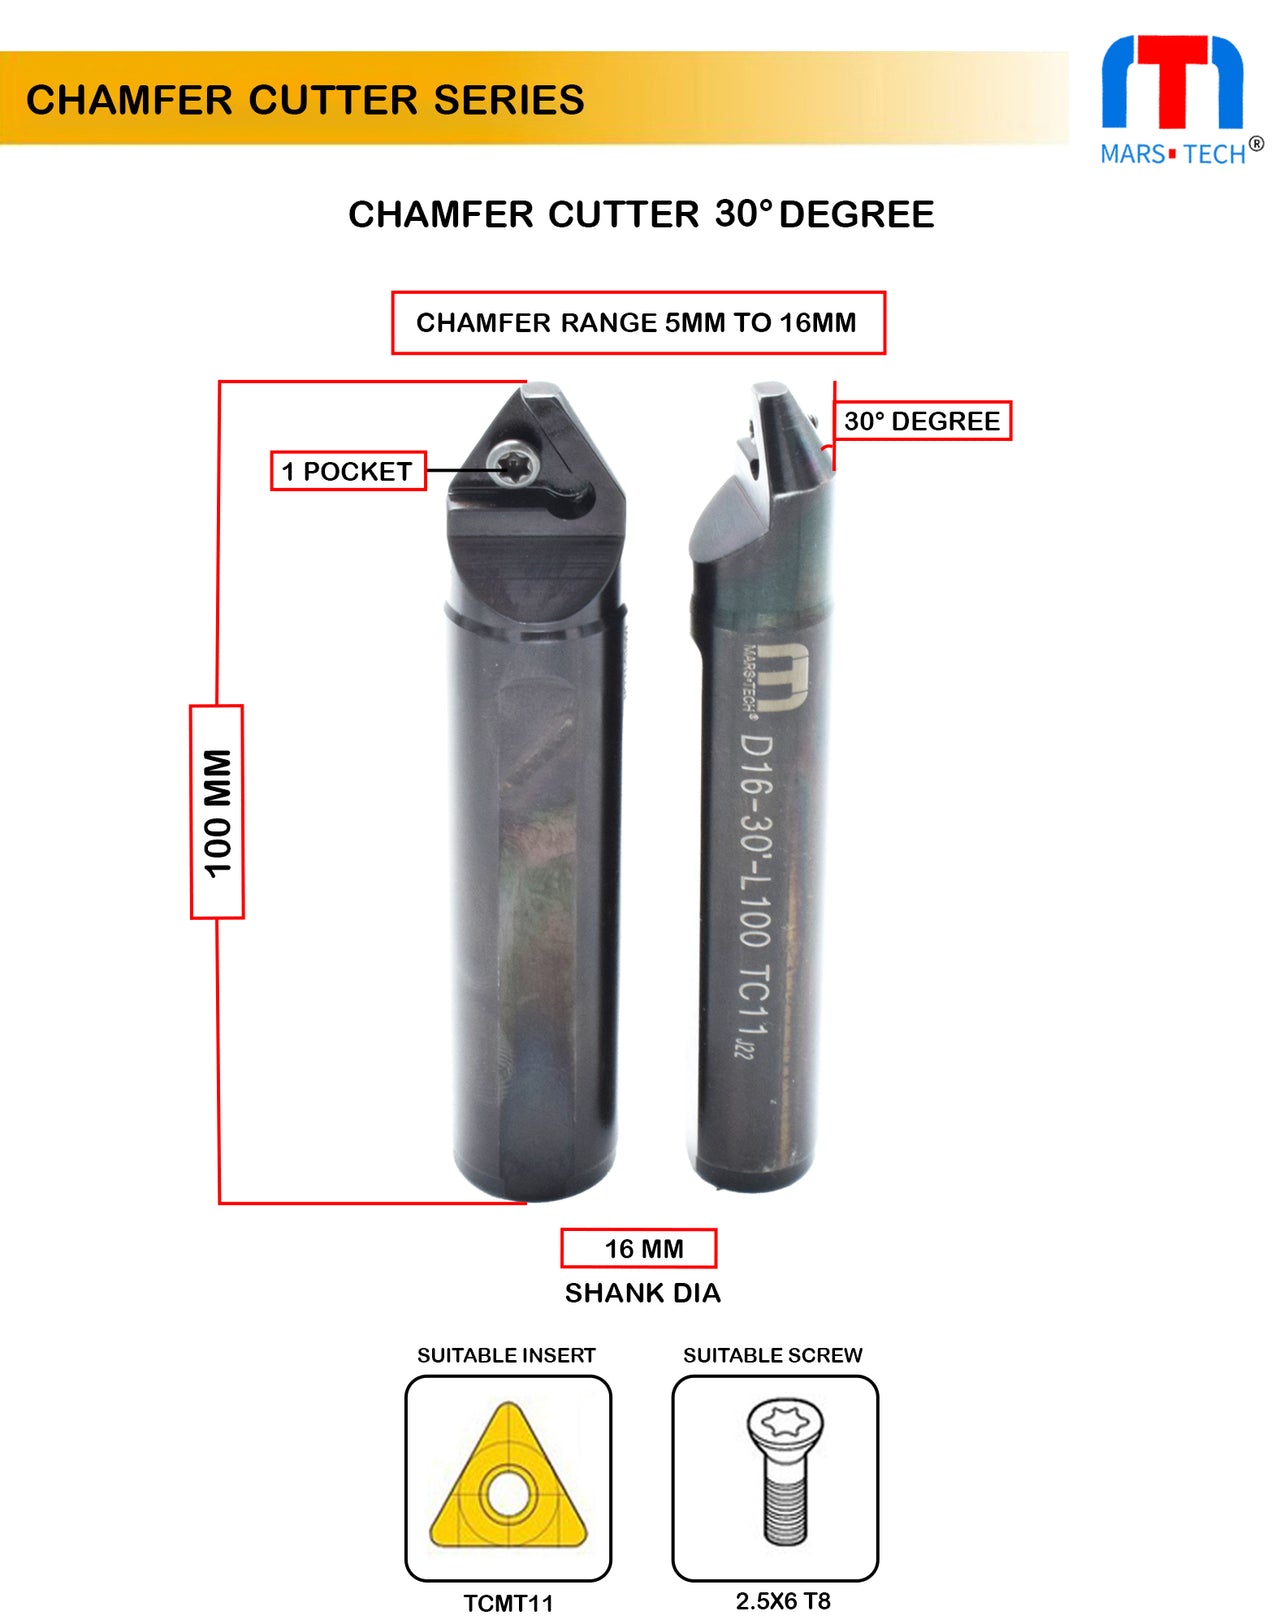 Chamfer Cutter 30 Degree 5-16mm 16 mm shank range pack of 1